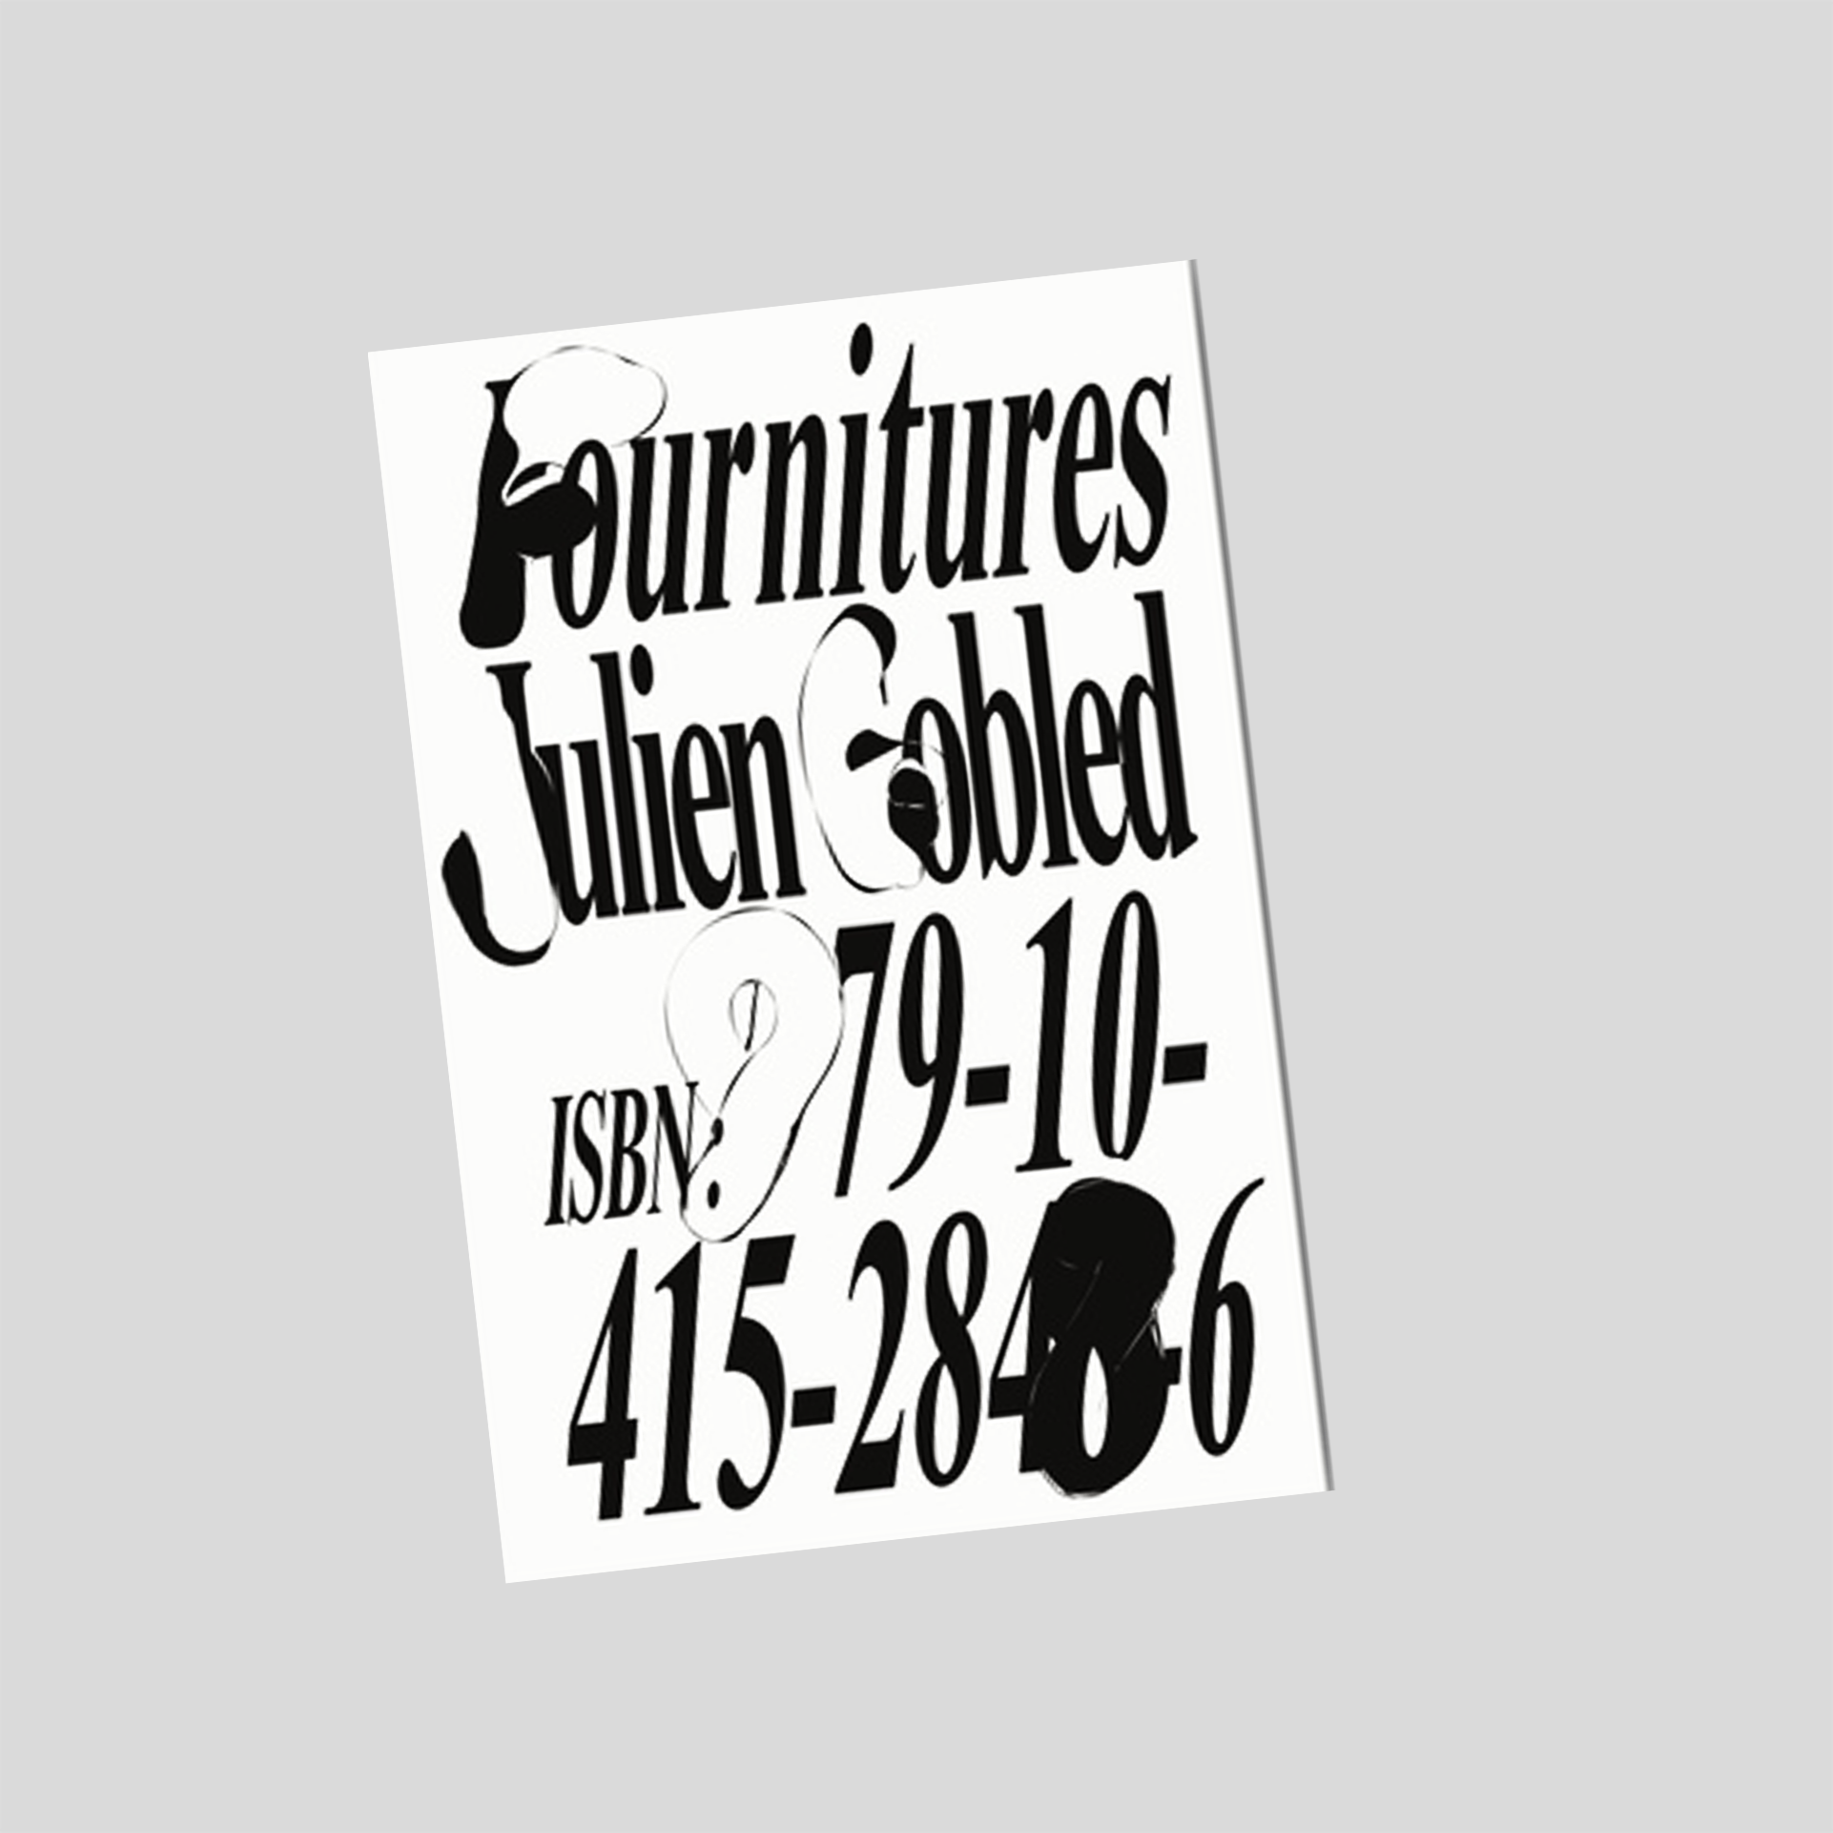 Fournitures - Julien Gobled